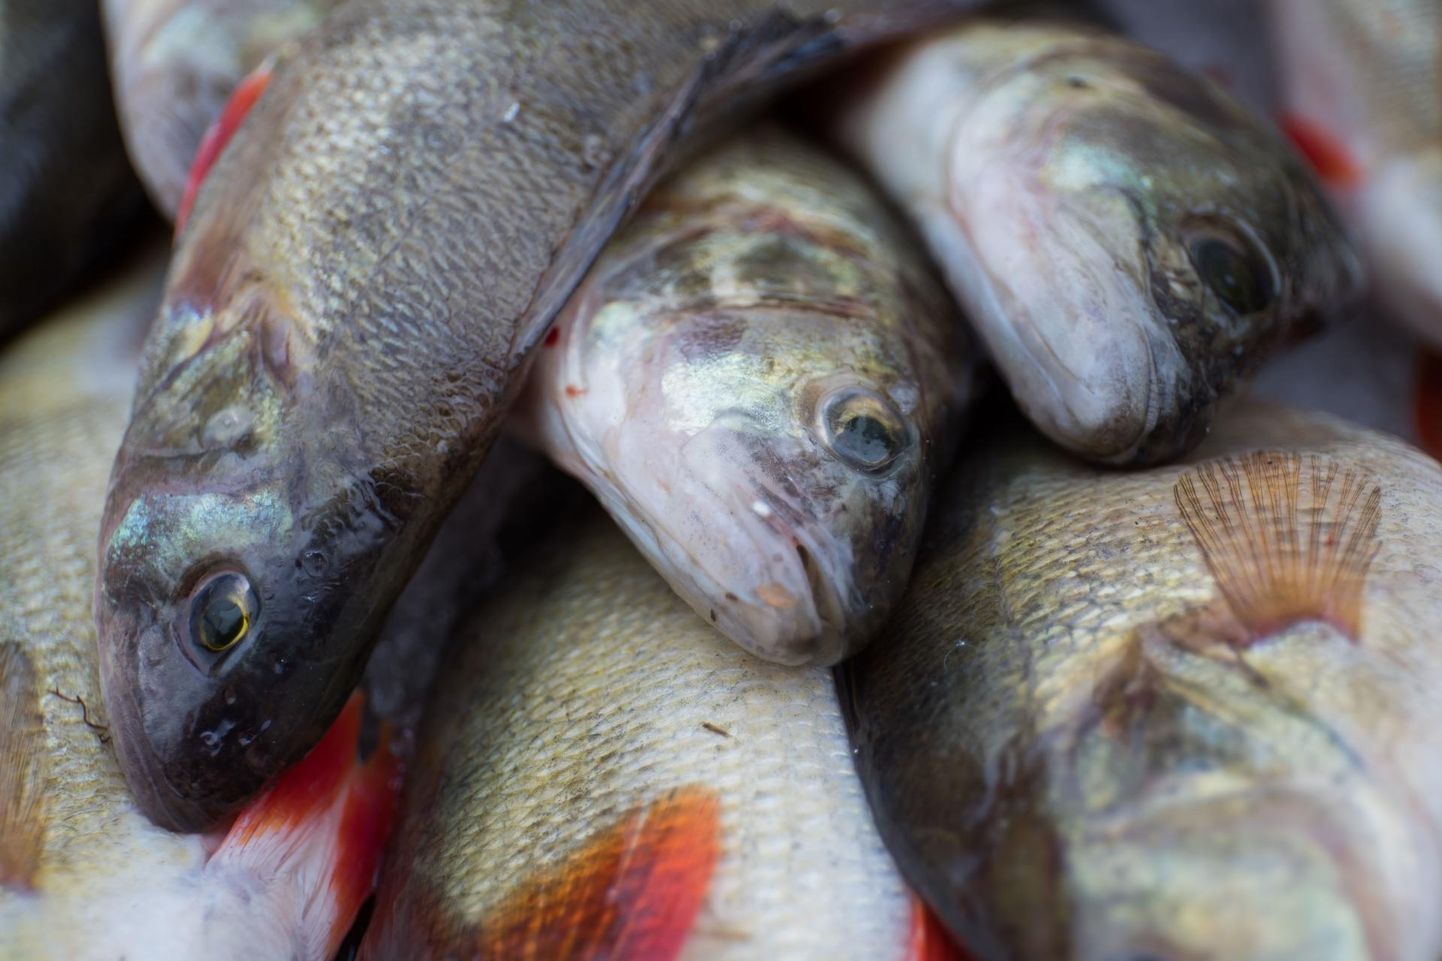 Kuivõrd mõjutavad listeeriabakteri leiud kohalikes kala- ja lihatööstustes tarbija otsuseid ja usaldust, näitab aeg, kirjutab Sirje Potisepp.